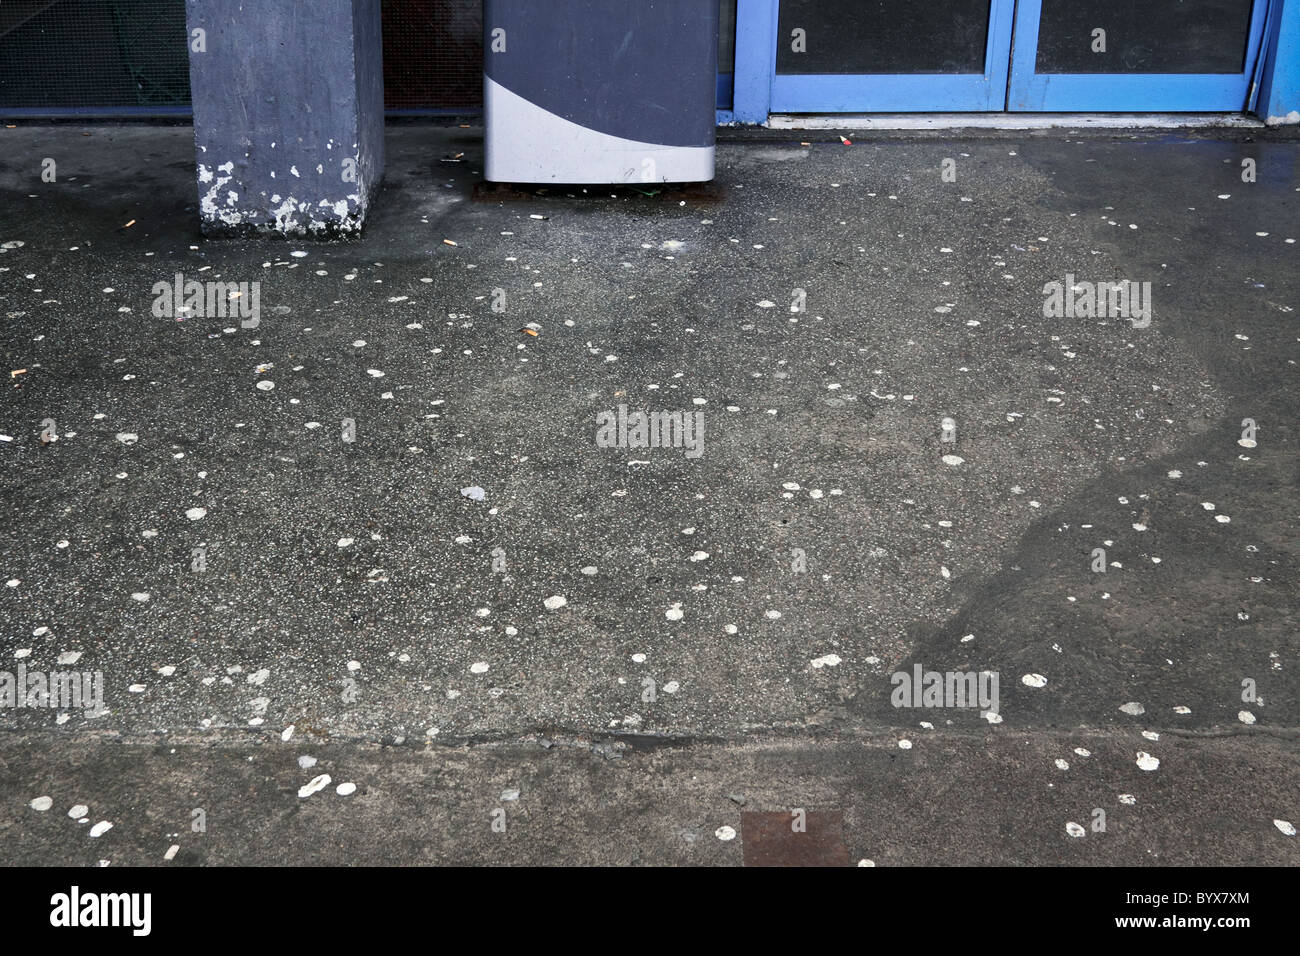 Verworfen, Kauen von Kaugummi und Gigatettes auf dem Boden vor dem Eingang zu einem öffentlichen Gebäude. Stockfoto